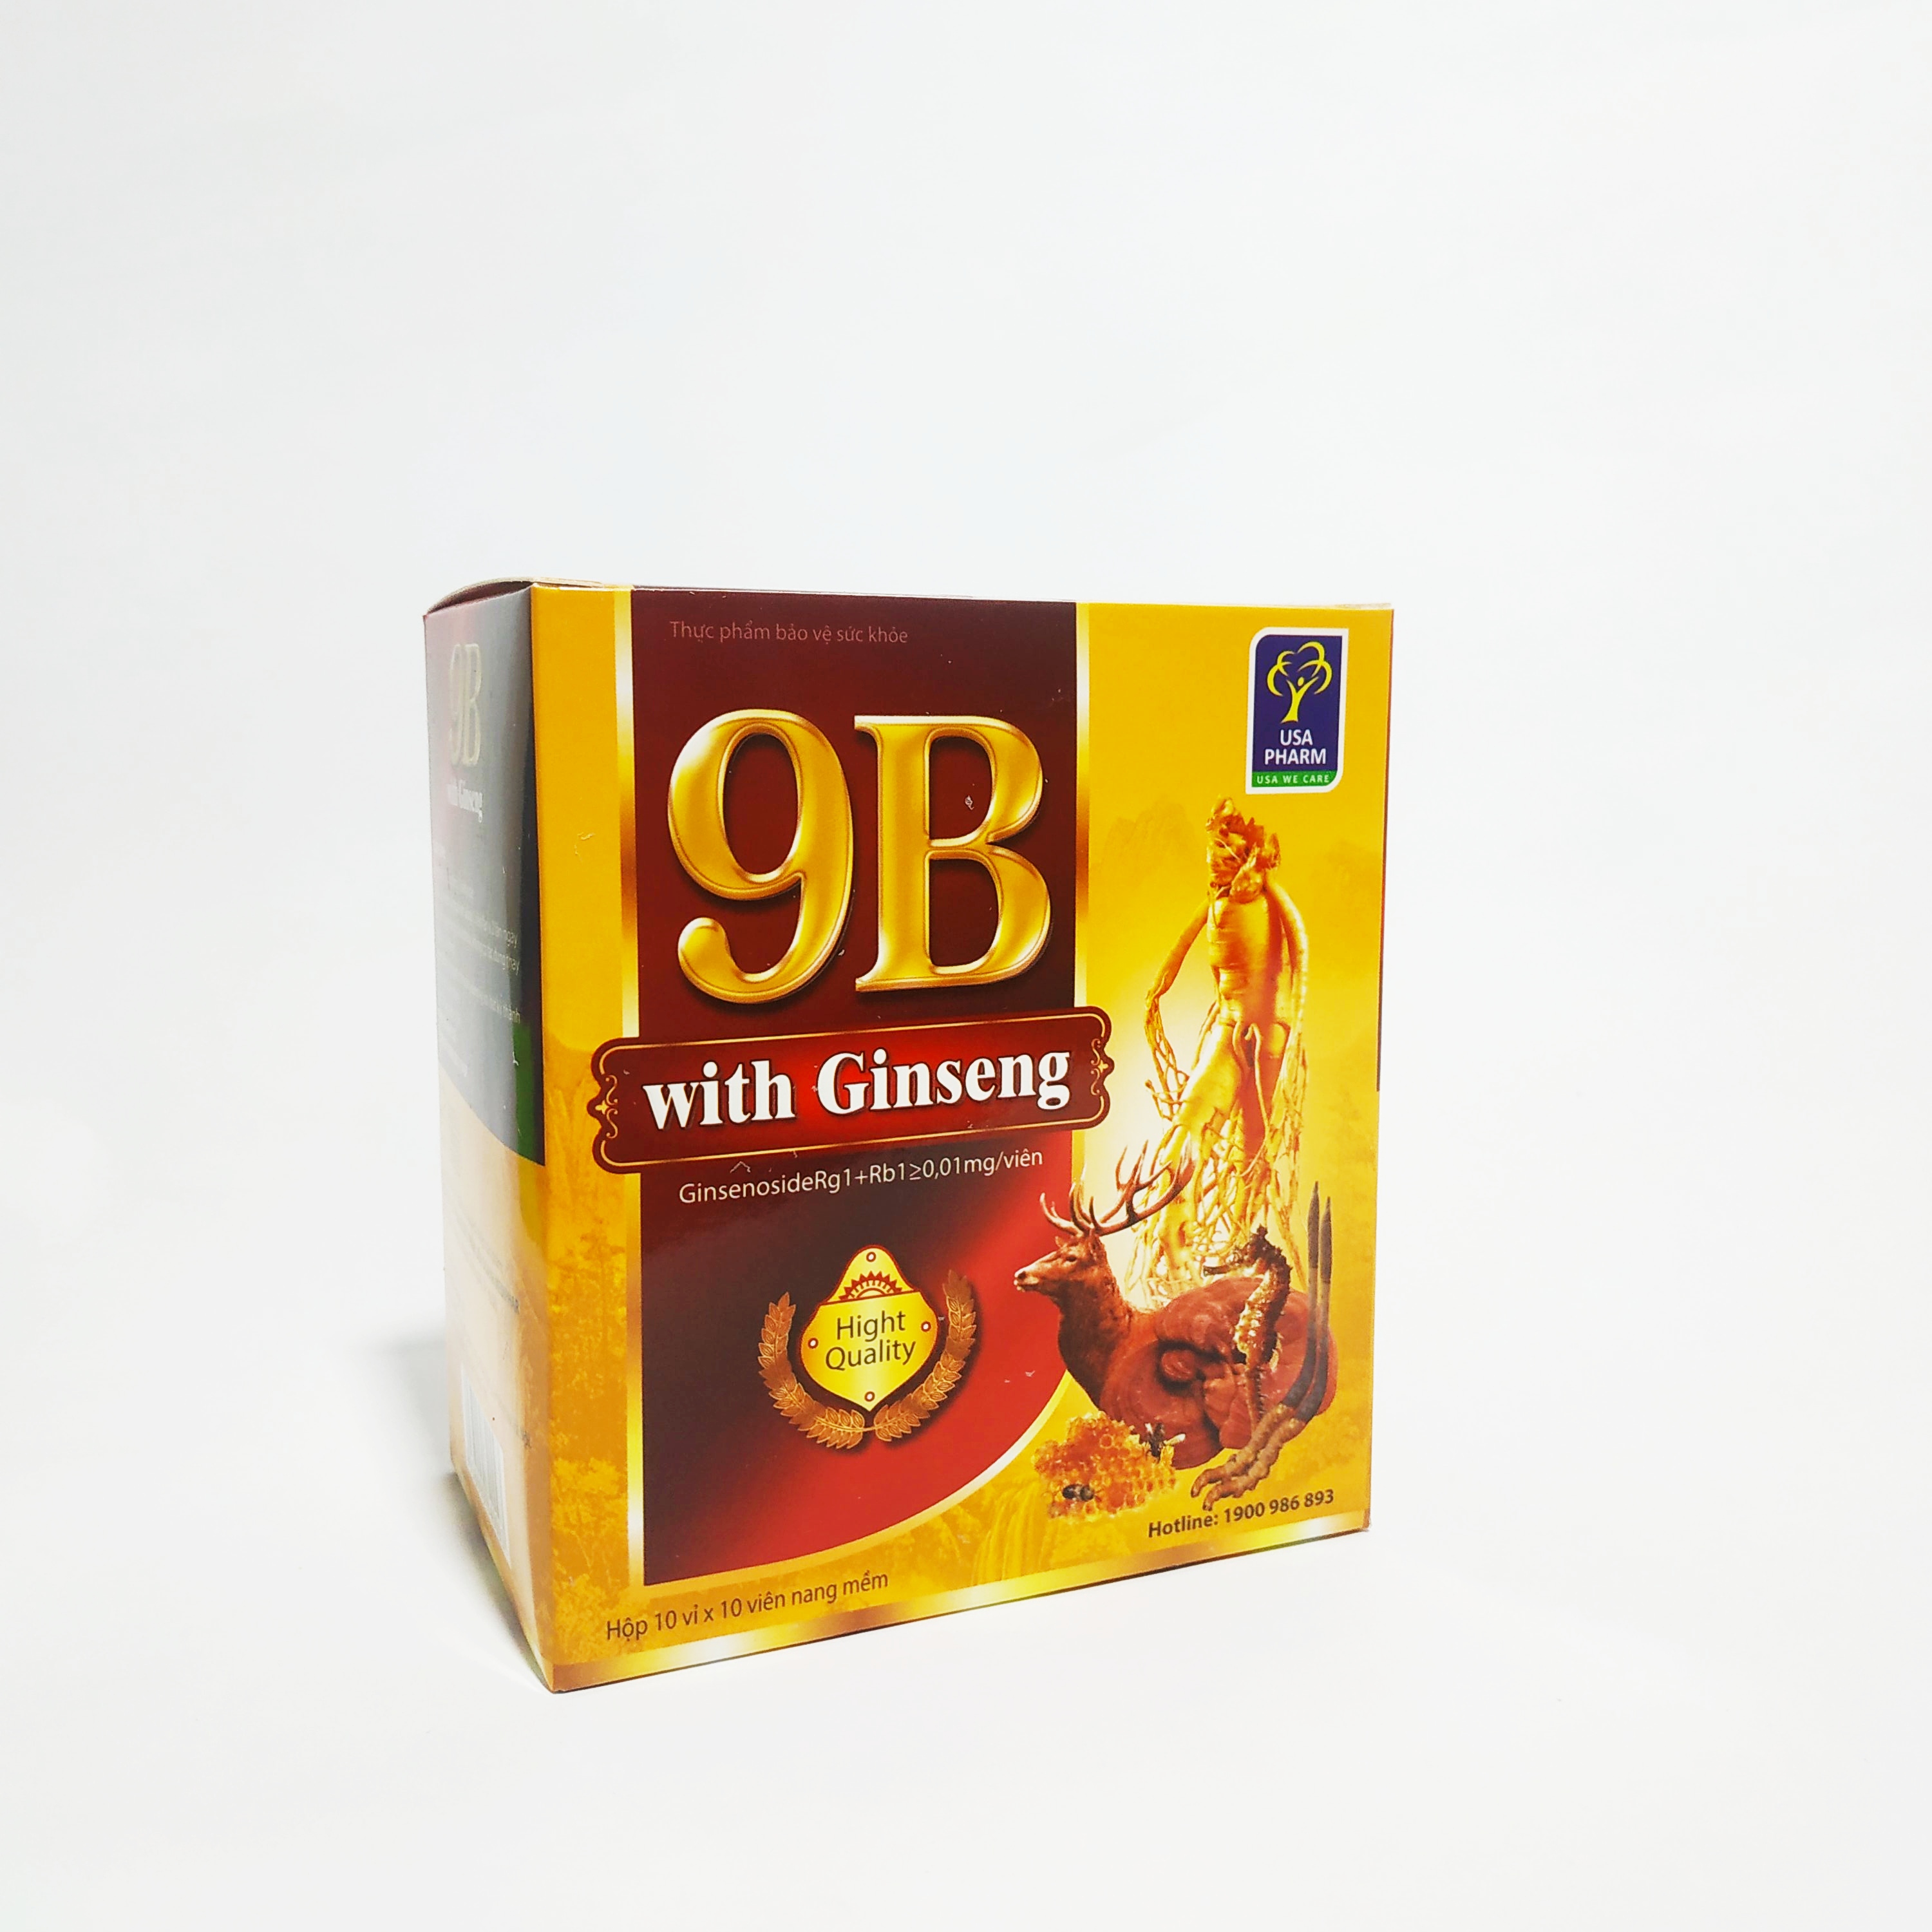 Viên Bổ Nhân Sâm 9B With Ginseng – Bổ Sung Các Vitamin Nhóm B, Bồi Bổ Cơ Thể, Nâng Cao Thể Lực Và Trí Lực - Hộp 100 Viên